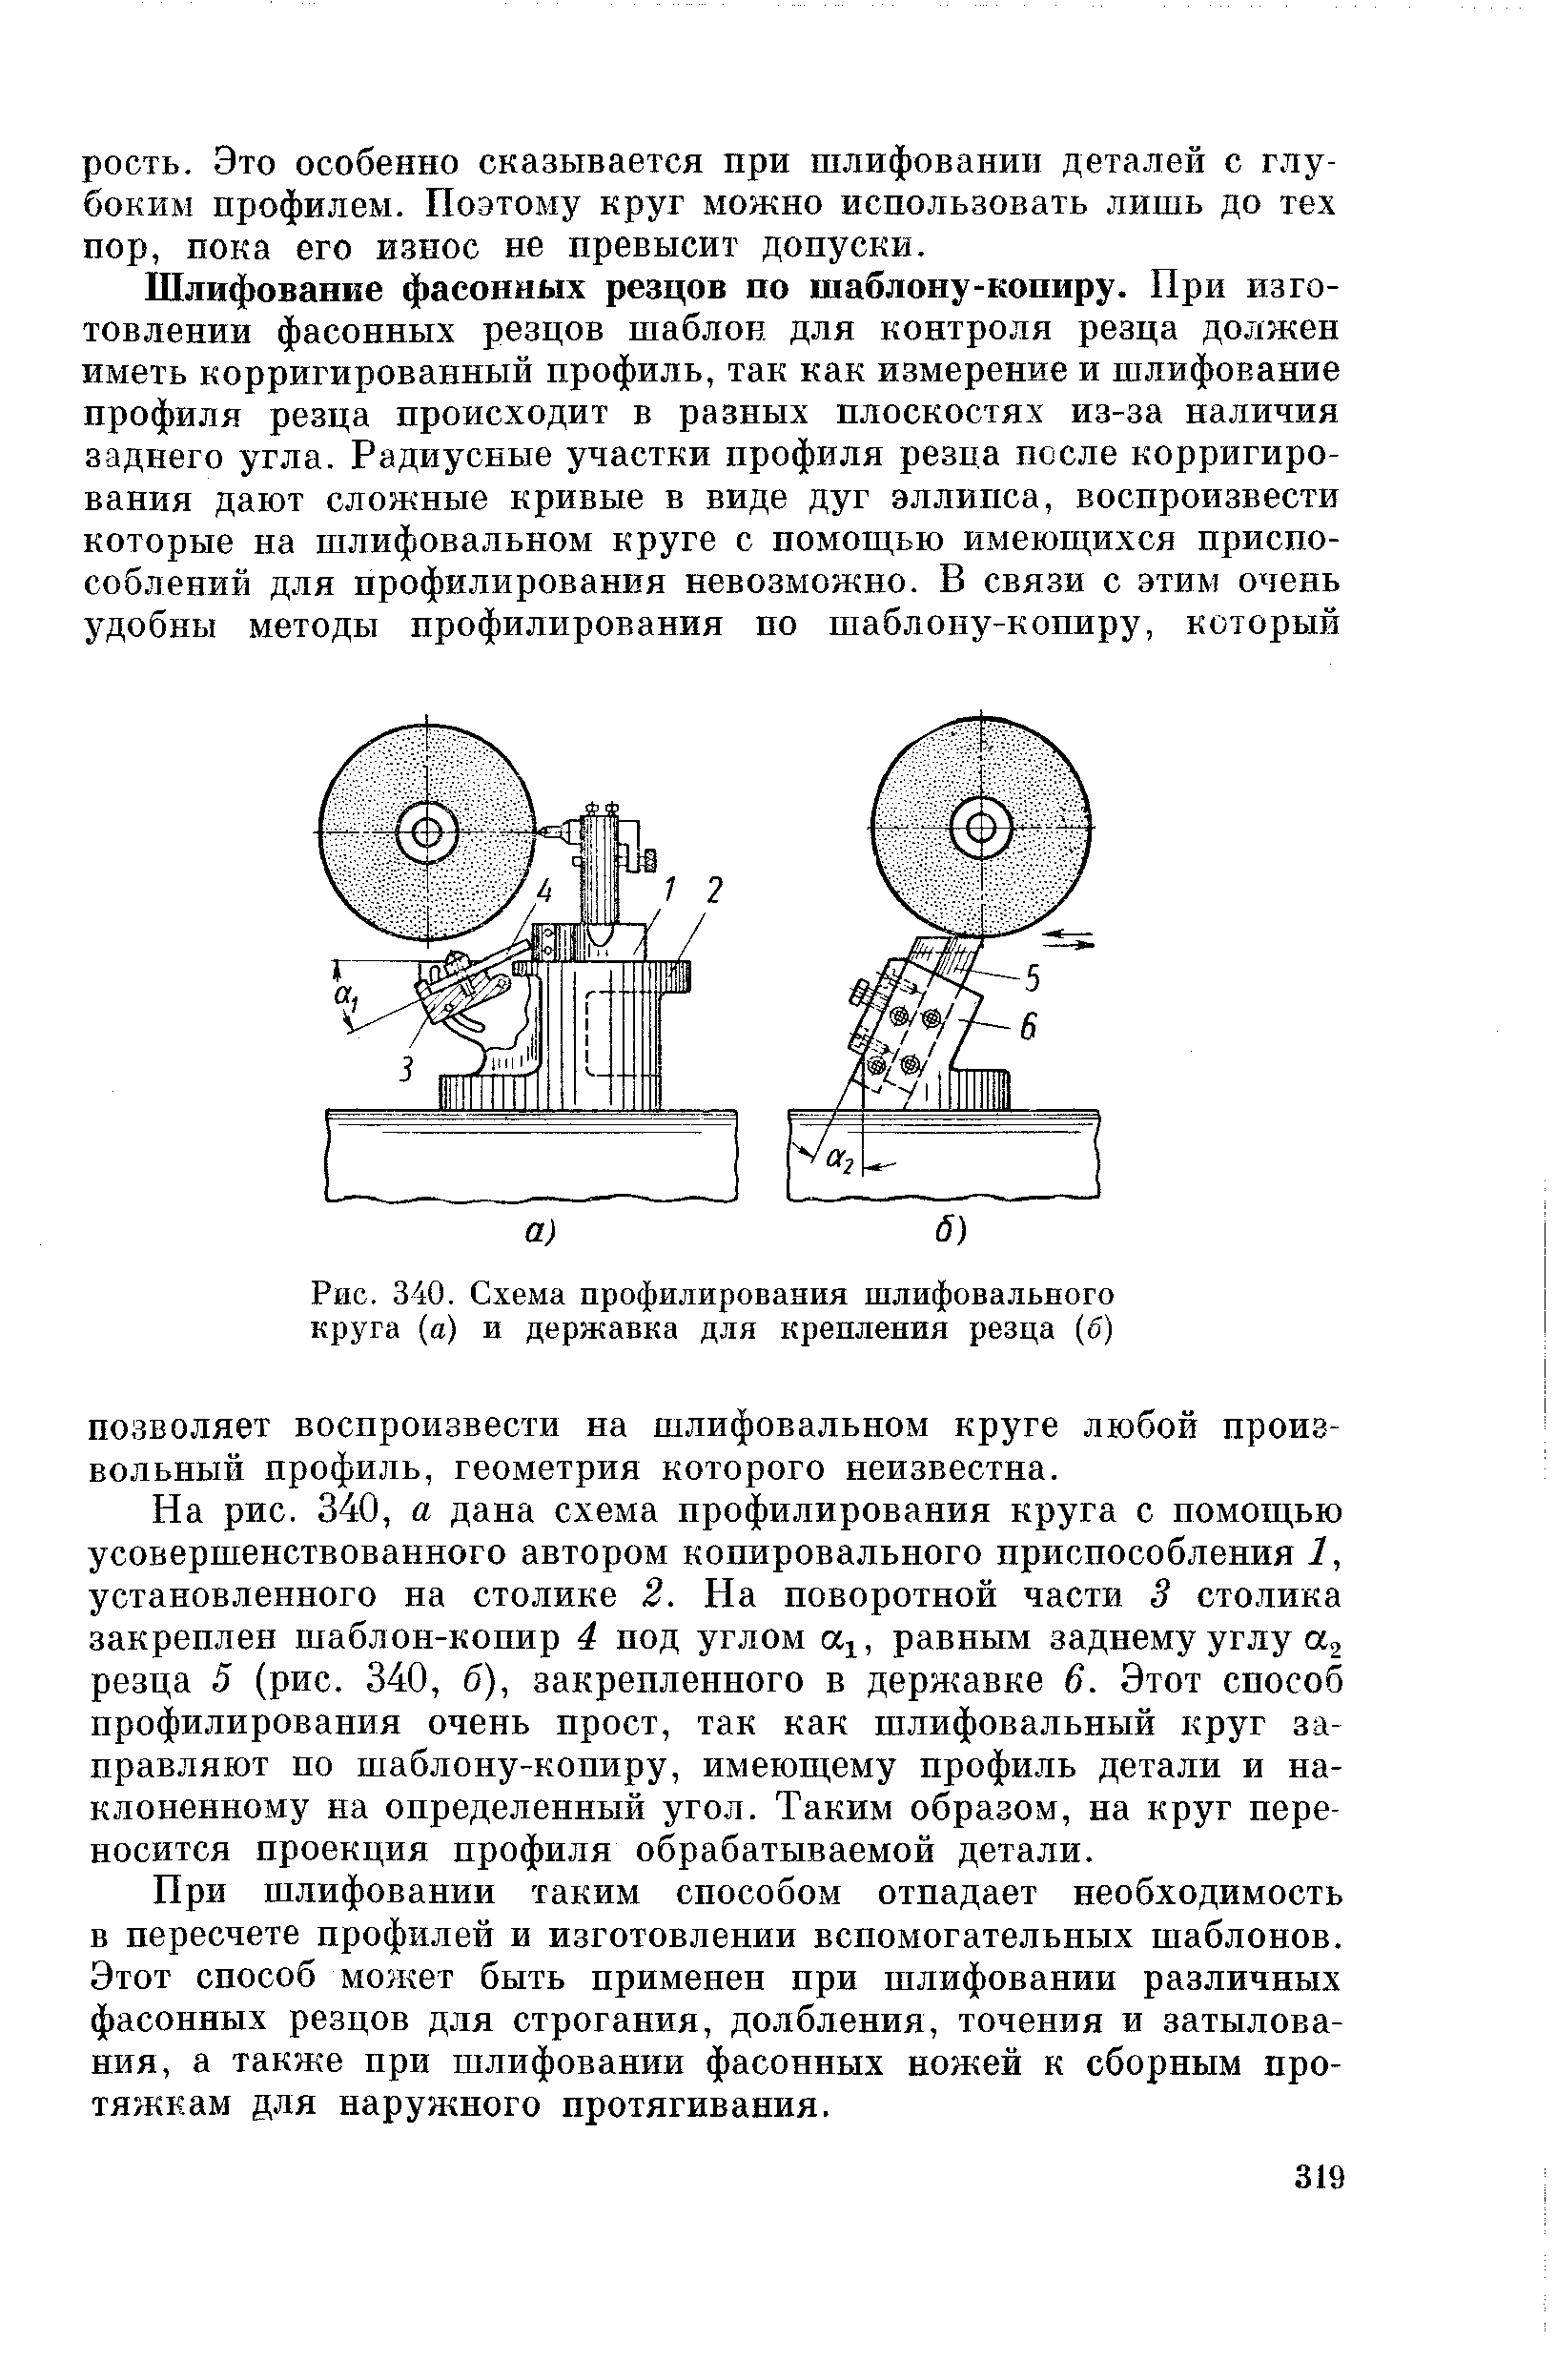 Рис. 340. Схема профилирования шлифовального круга (а) и державка для крепления резца (б)
